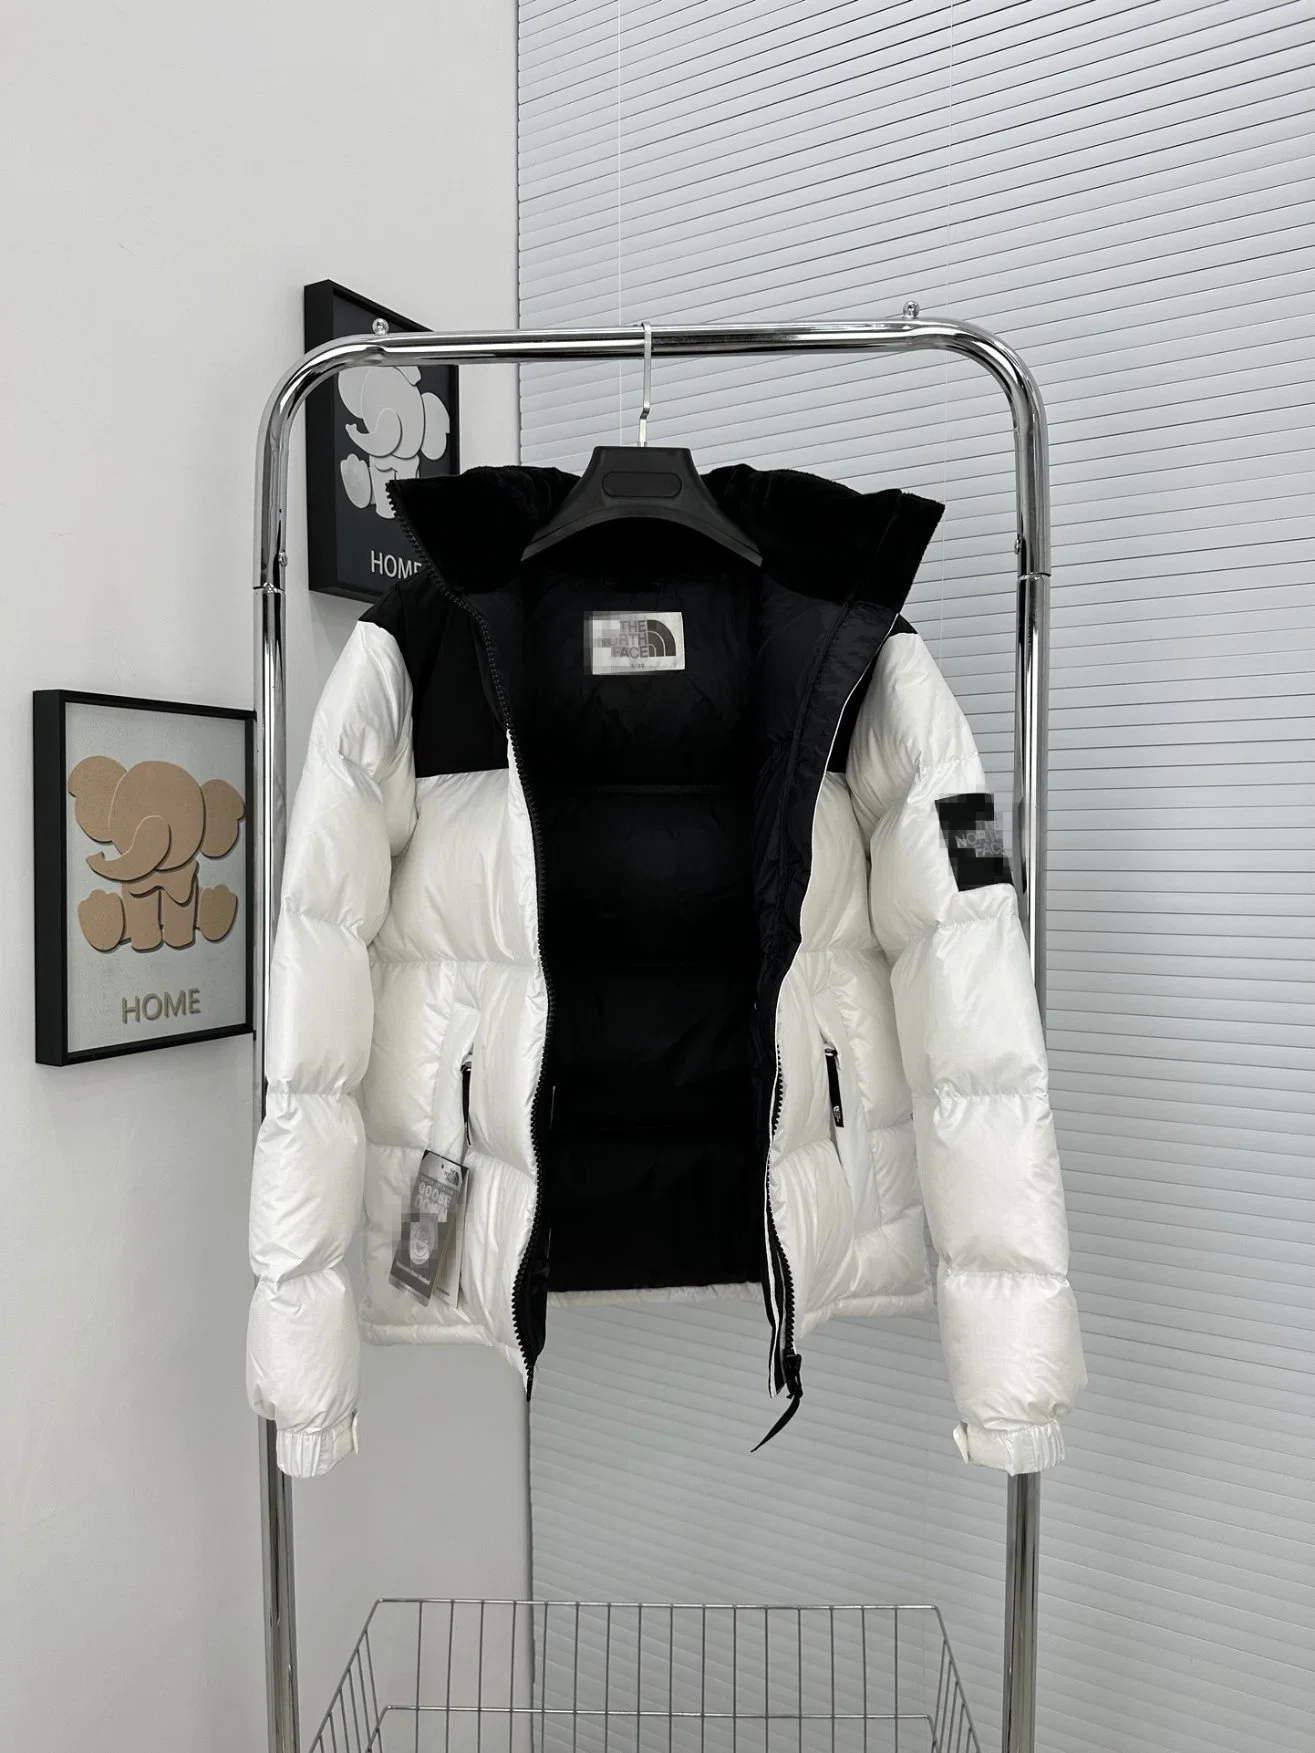 Design Hohe Qualität Männer Frauen Winter Outdoor Halten Sie Warm Luxus Marke Fashion Bekleidung Puffer Jacken Mäntel Bekleidung